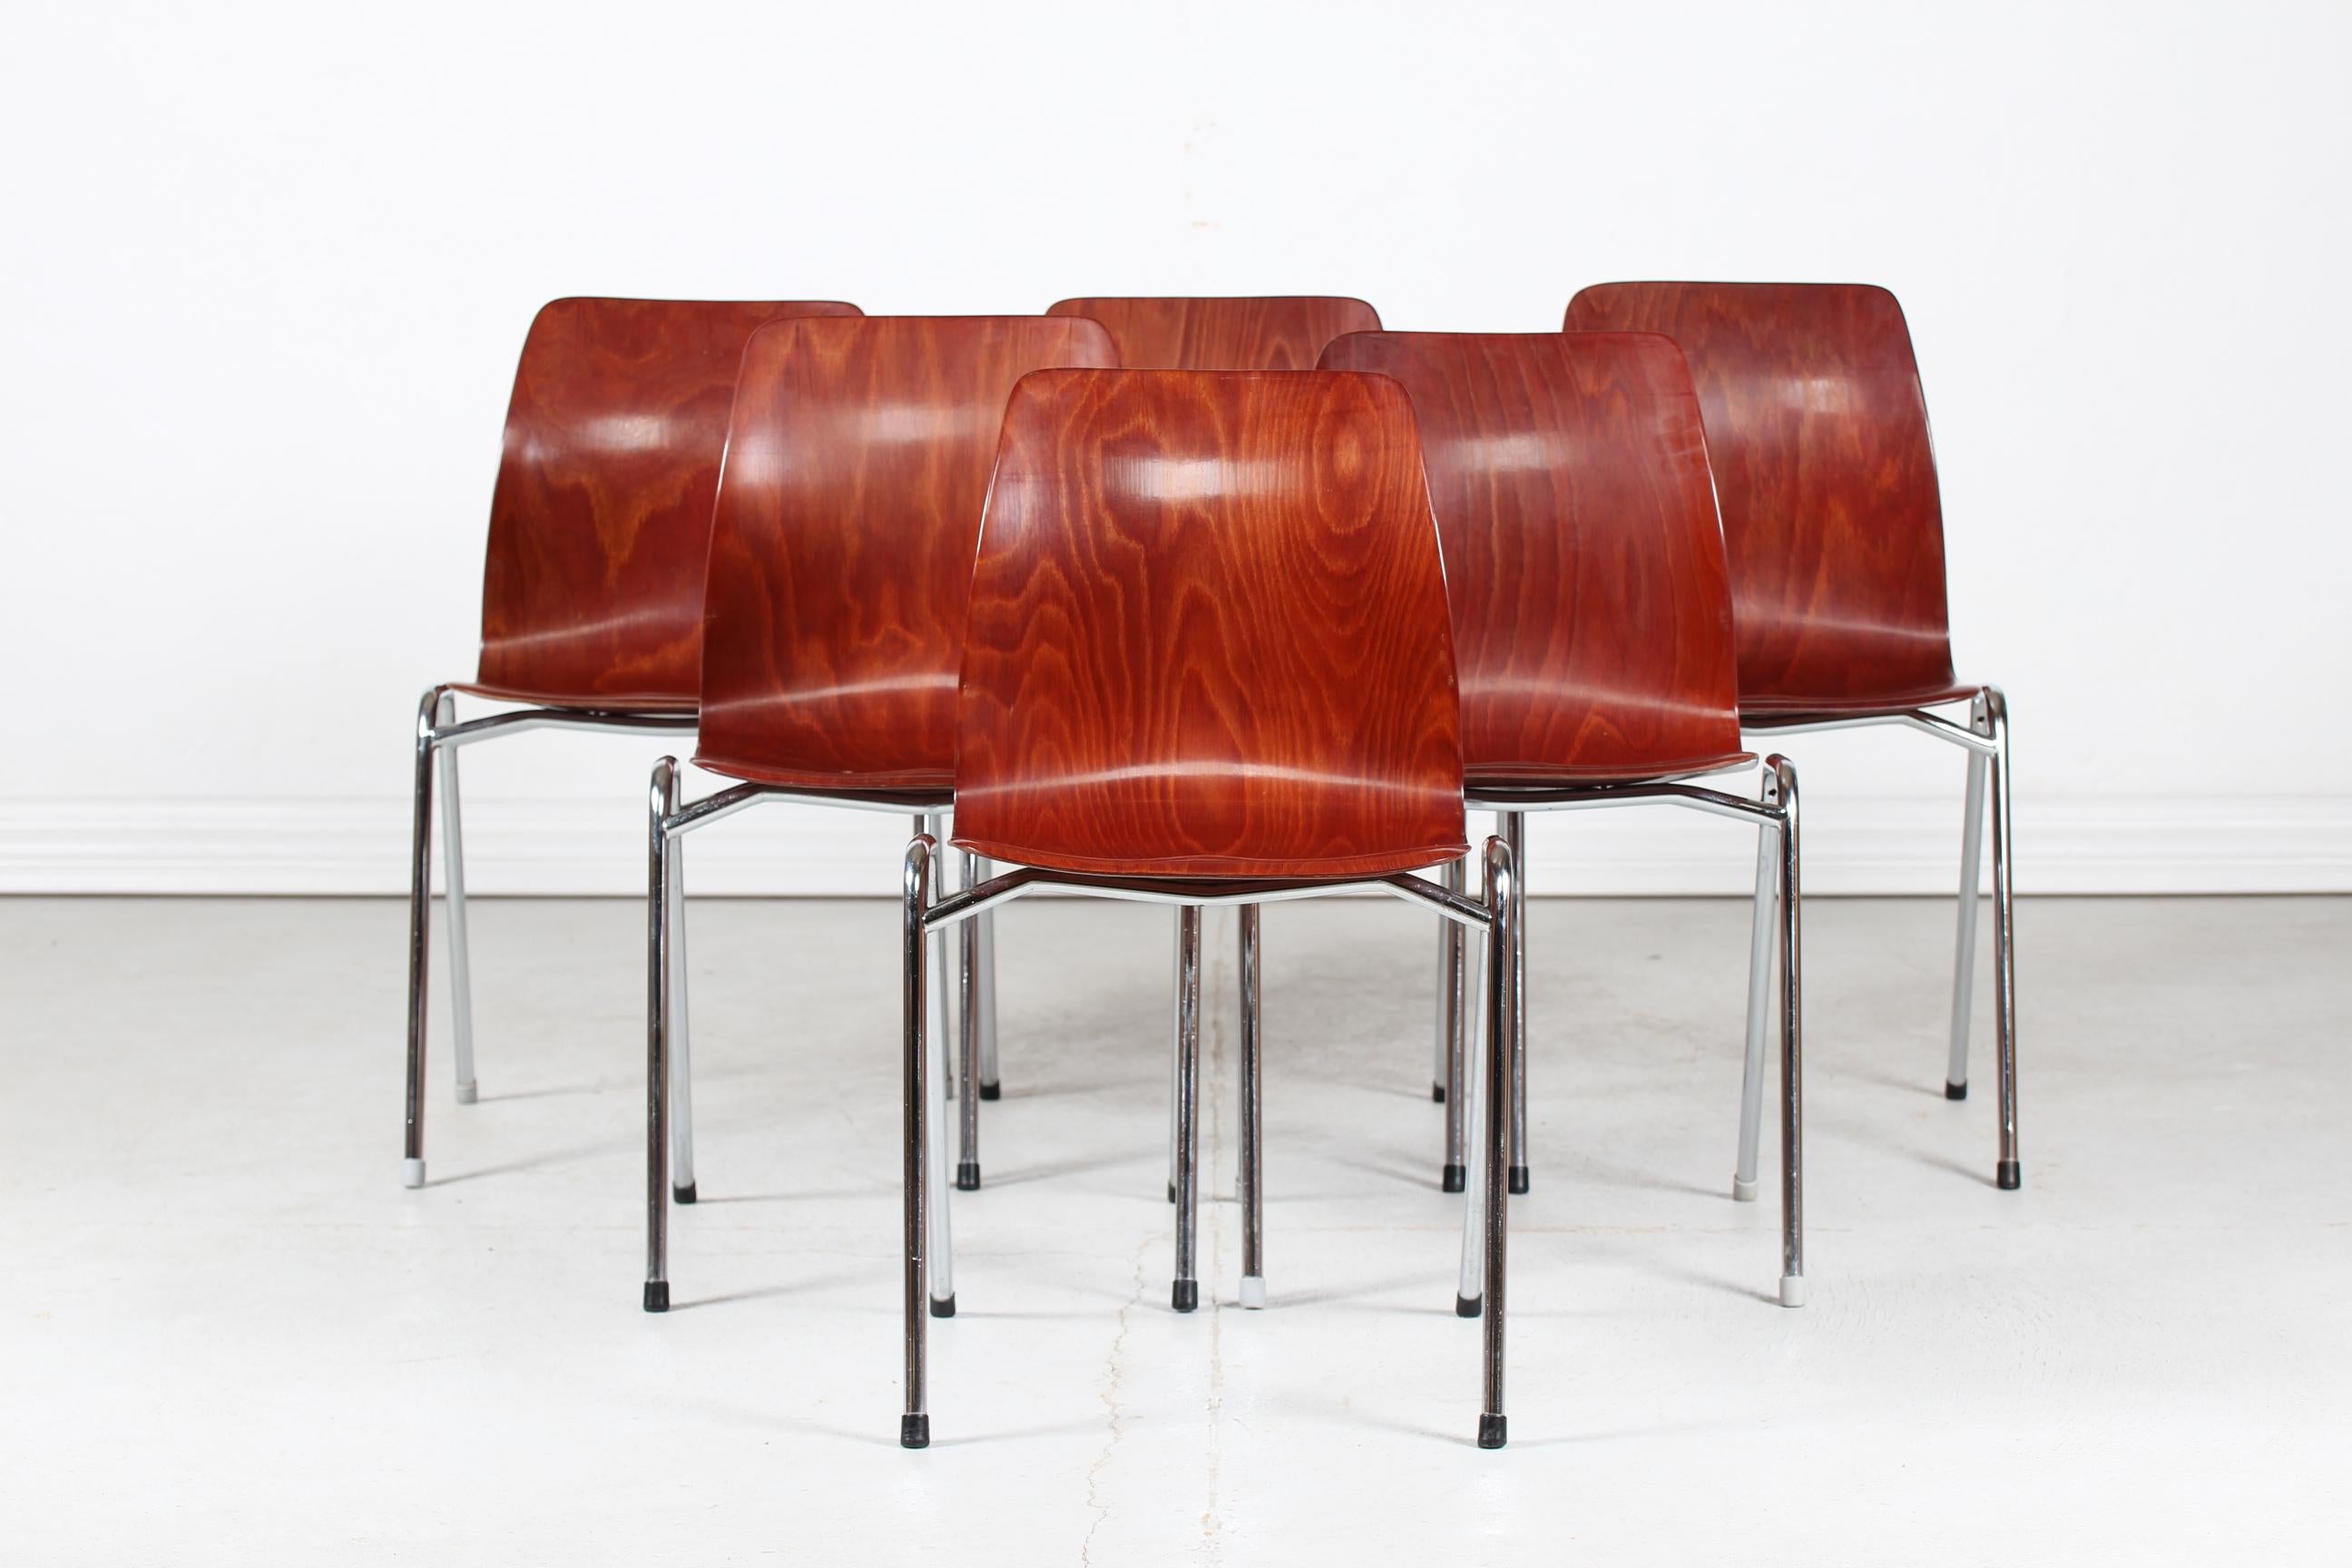 Un ensemble de six chaises empilables Flötotto et Pagholz fabriquées par Pagholz en Allemagne.

Les chaises sont fabriquées en contreplaqué moulé brun-noisette et laqué. Pieds en métal chromé.

Belle condition vintage après une utilisation